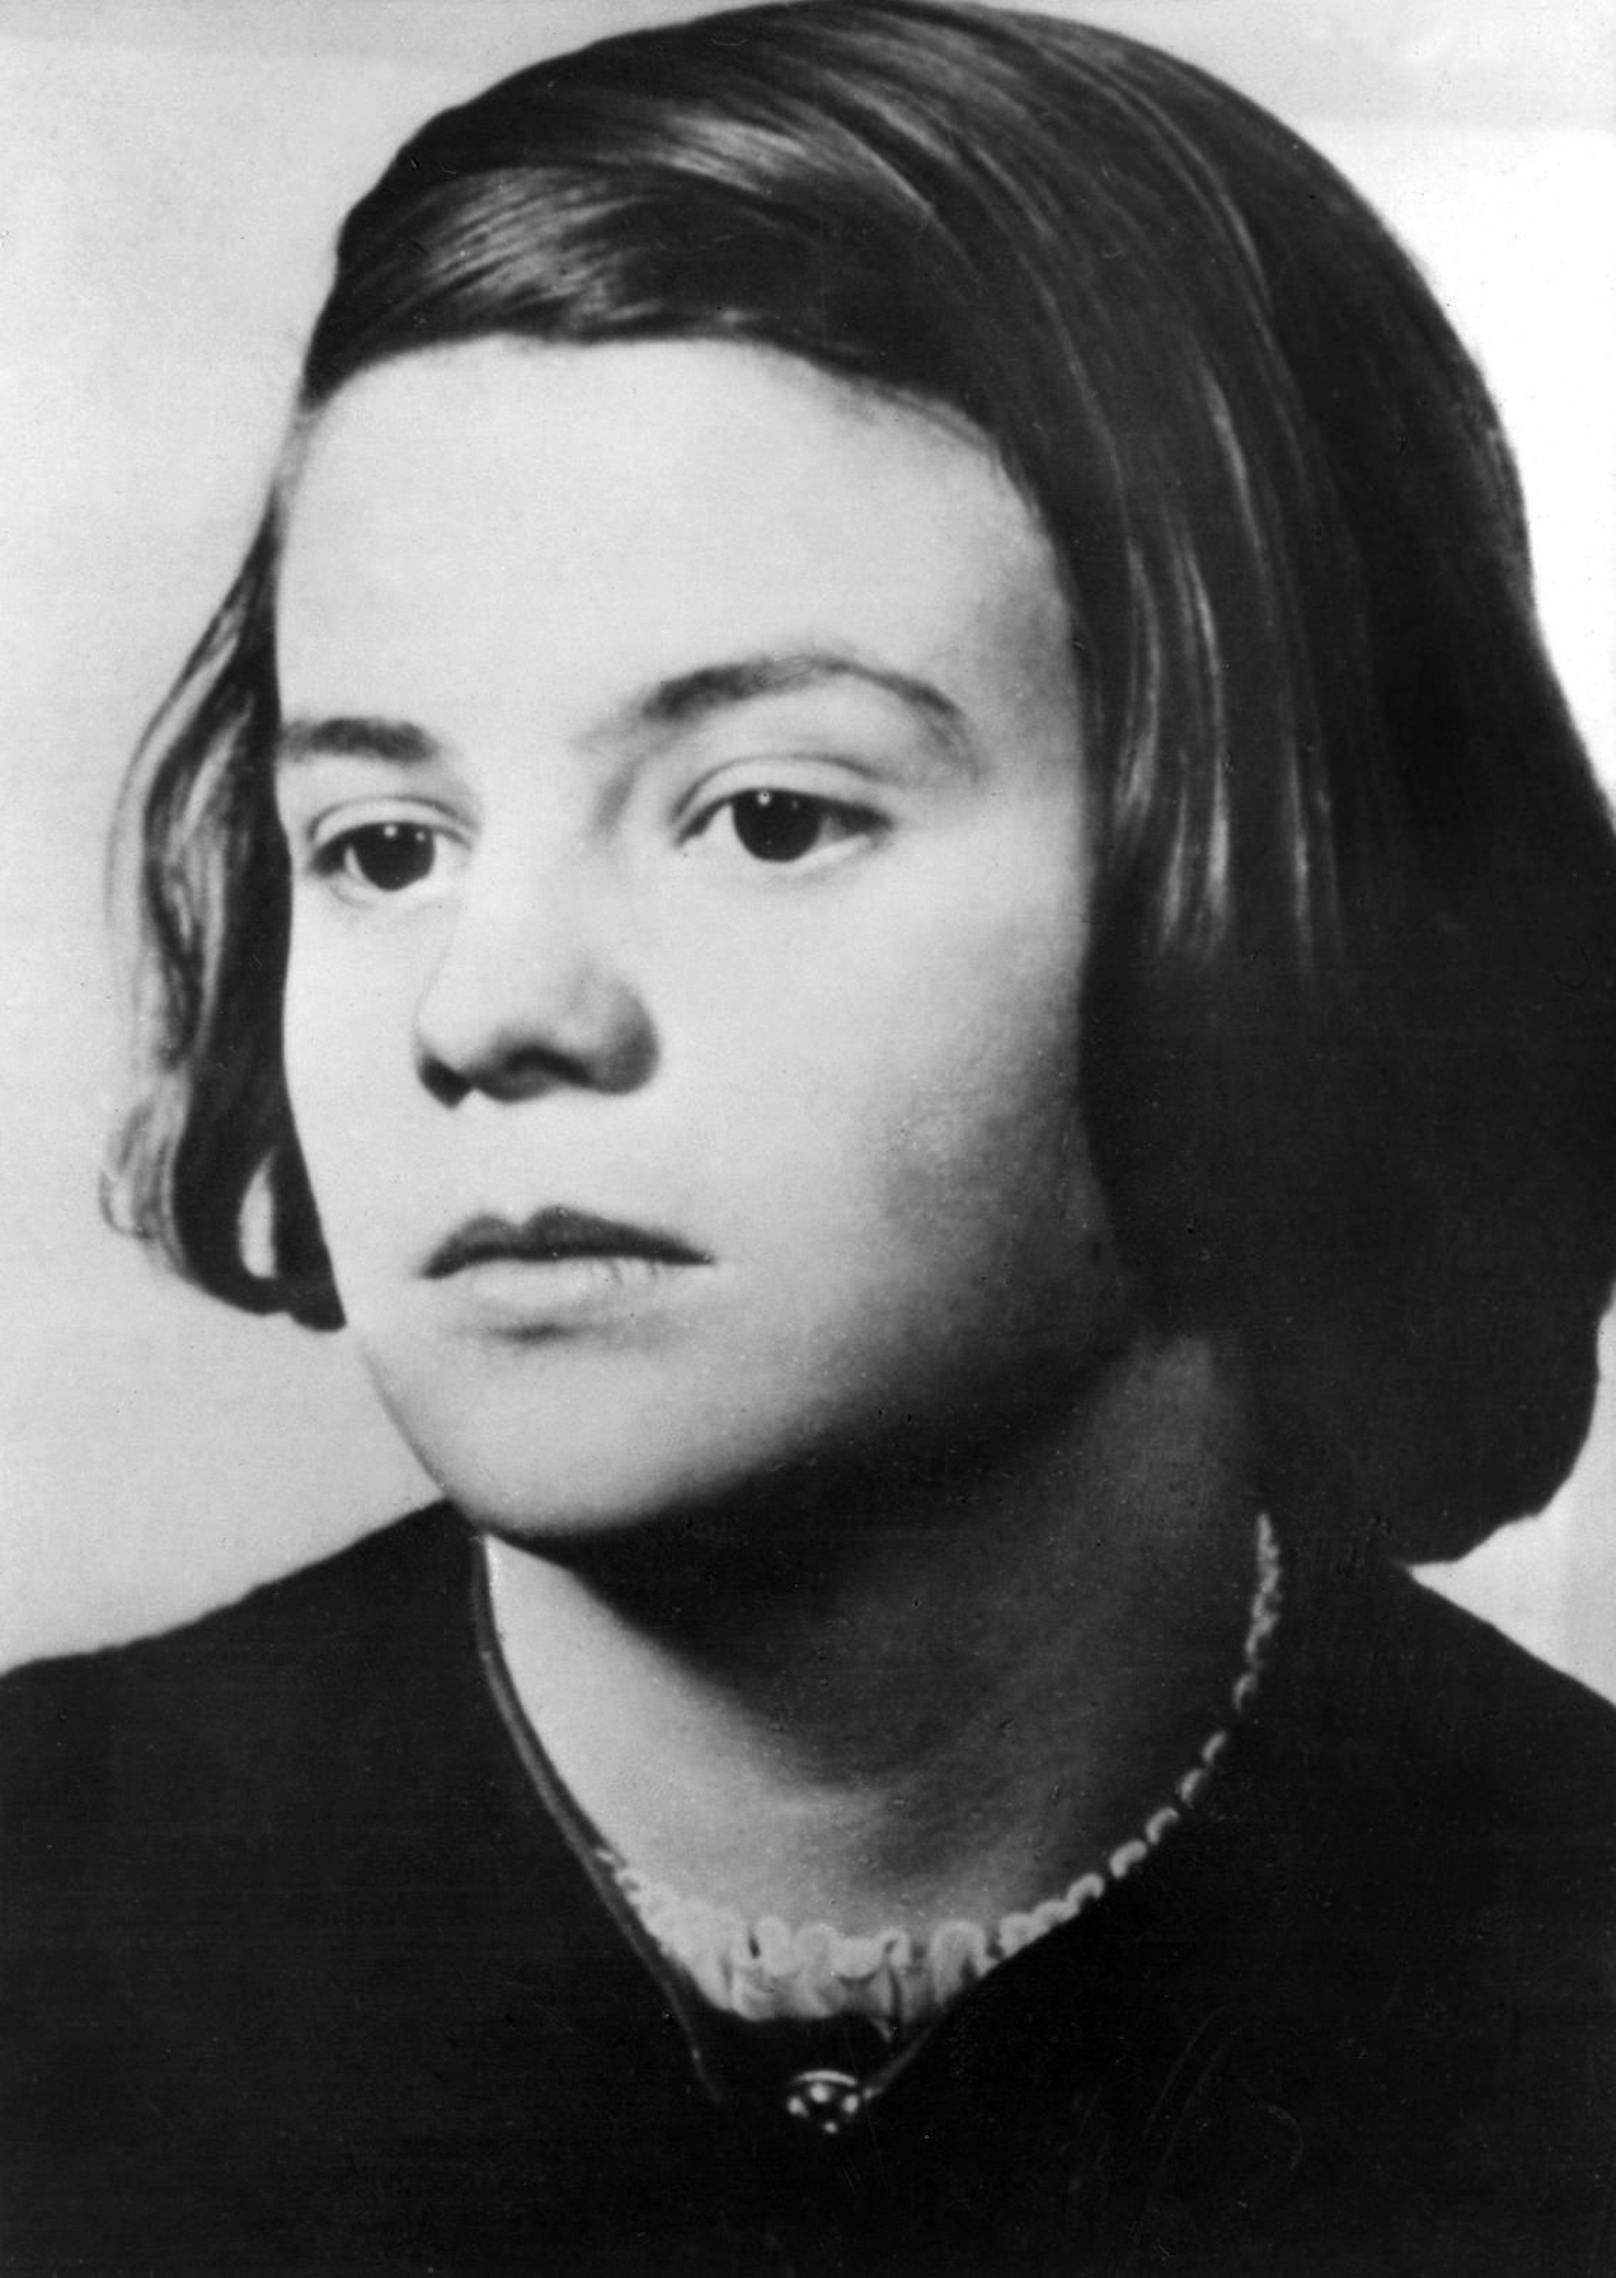 Das undatierte Foto zeigt Sophie Scholl, Mitglied der "Weißen Rose". In Flugblättern prangerte die Widerstandsgruppe die Verbrechen der Nationalsozialisten an. Nach einer Flugblattaktion am 18. Februar 1943 wurden Scholl und andere verhaftet und zum Tode verurteilt.